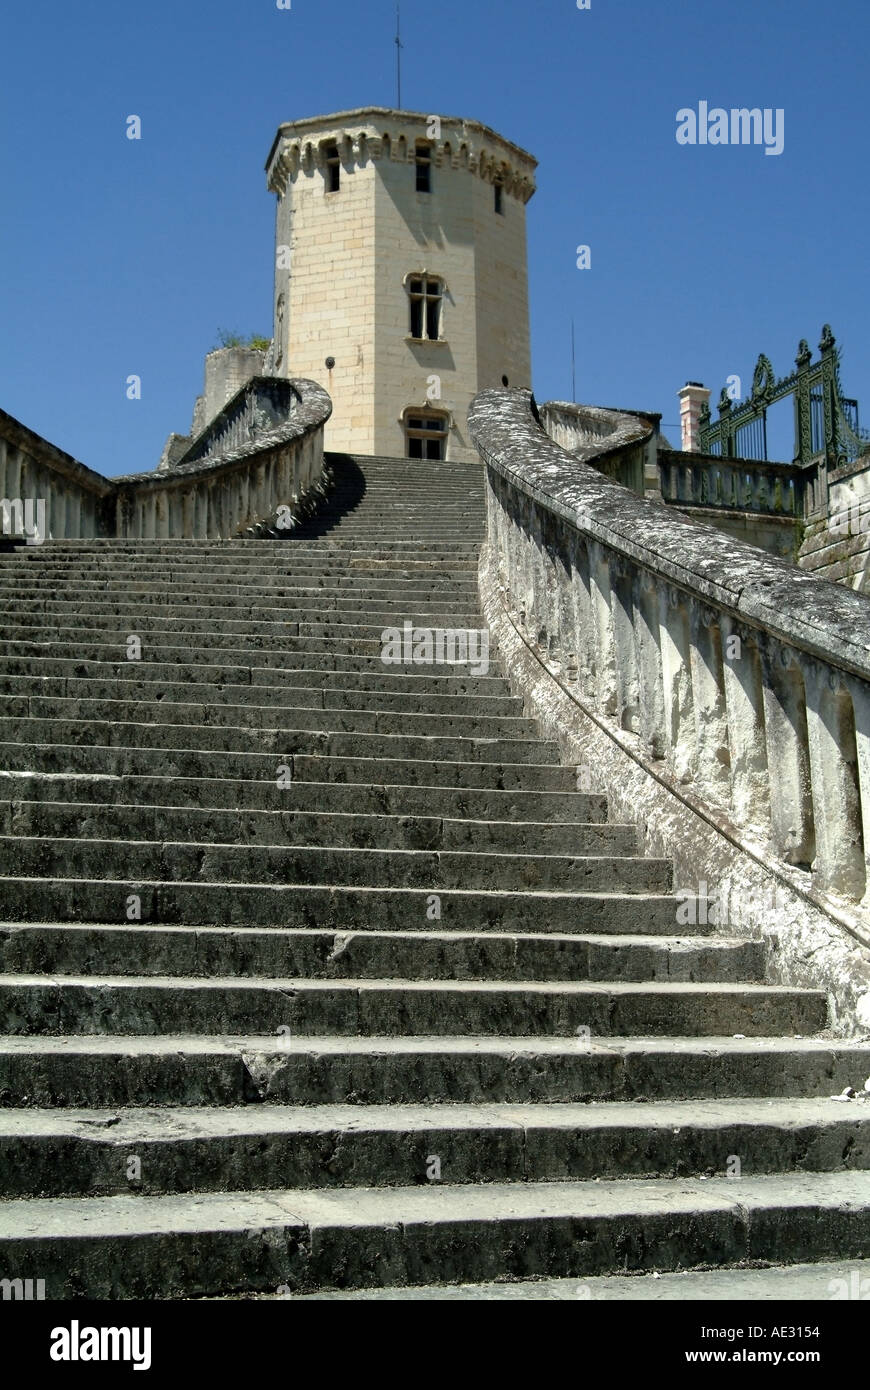 france loir et cher st aignan 16th century renaissance chateau staircase Stock Photo